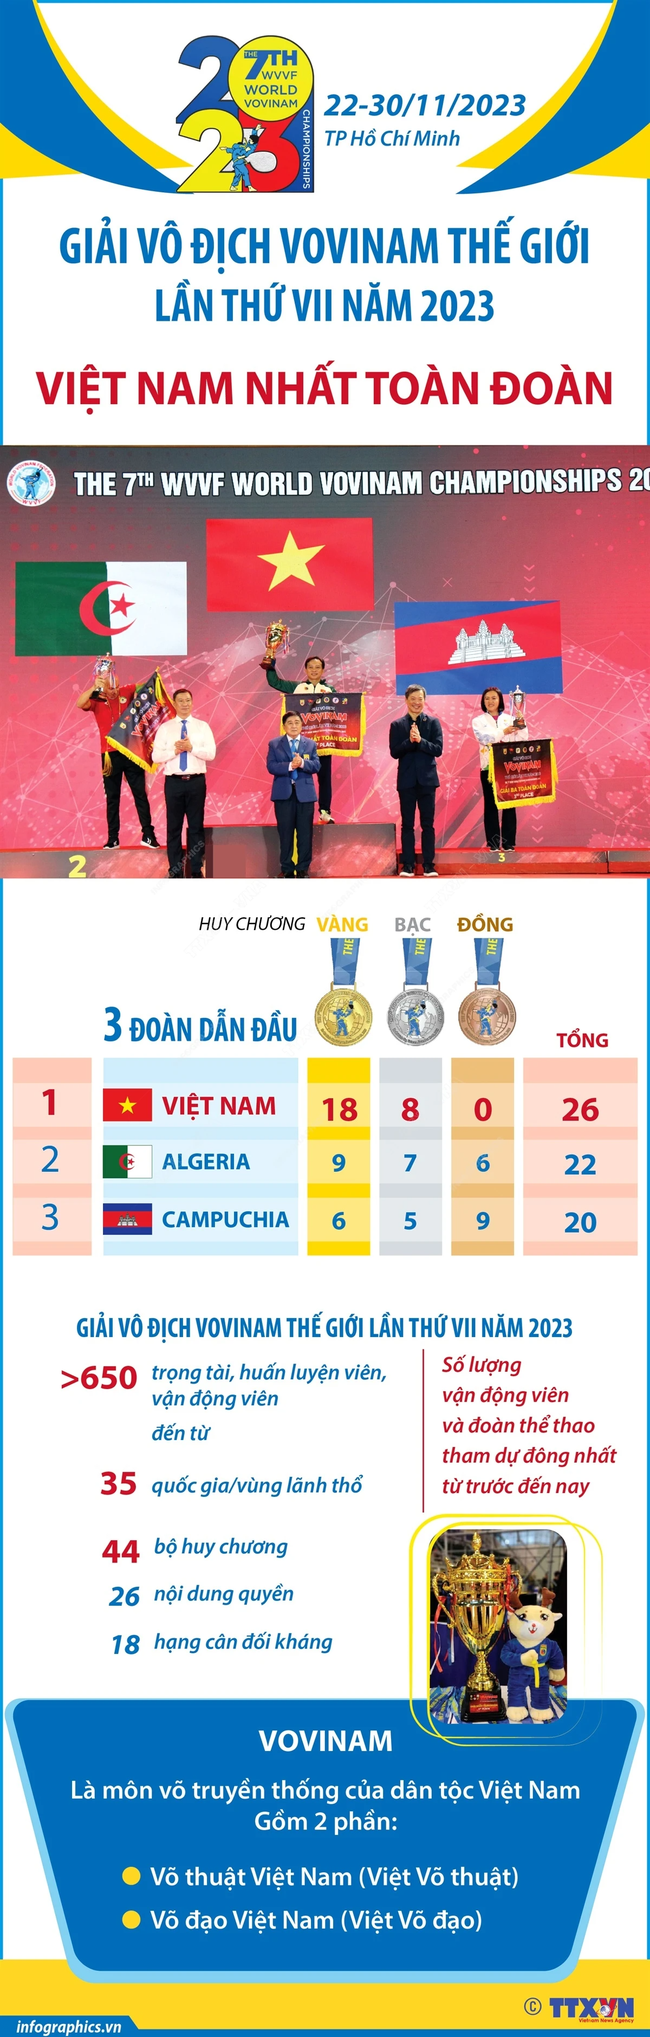 Các võ sĩ Việt Nam tạo ‘cơn mưa vàng’ ở giải vô địch thế giới, giúp đoàn thể thao nước nhà đứng số 1 - Ảnh 3.